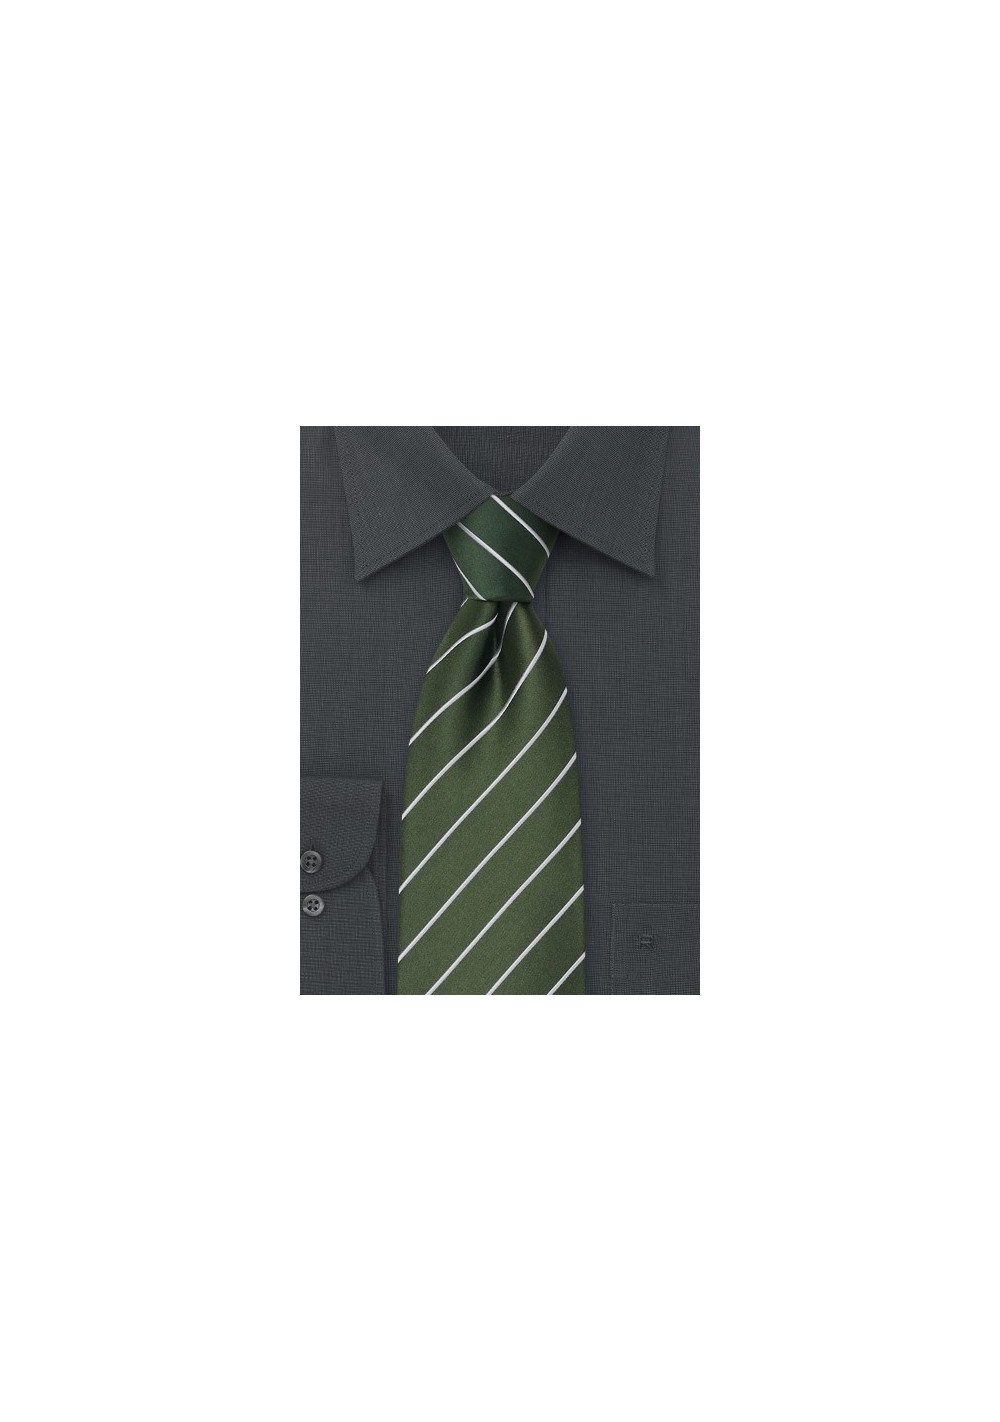 Green Silk Ties - Striped green necktie